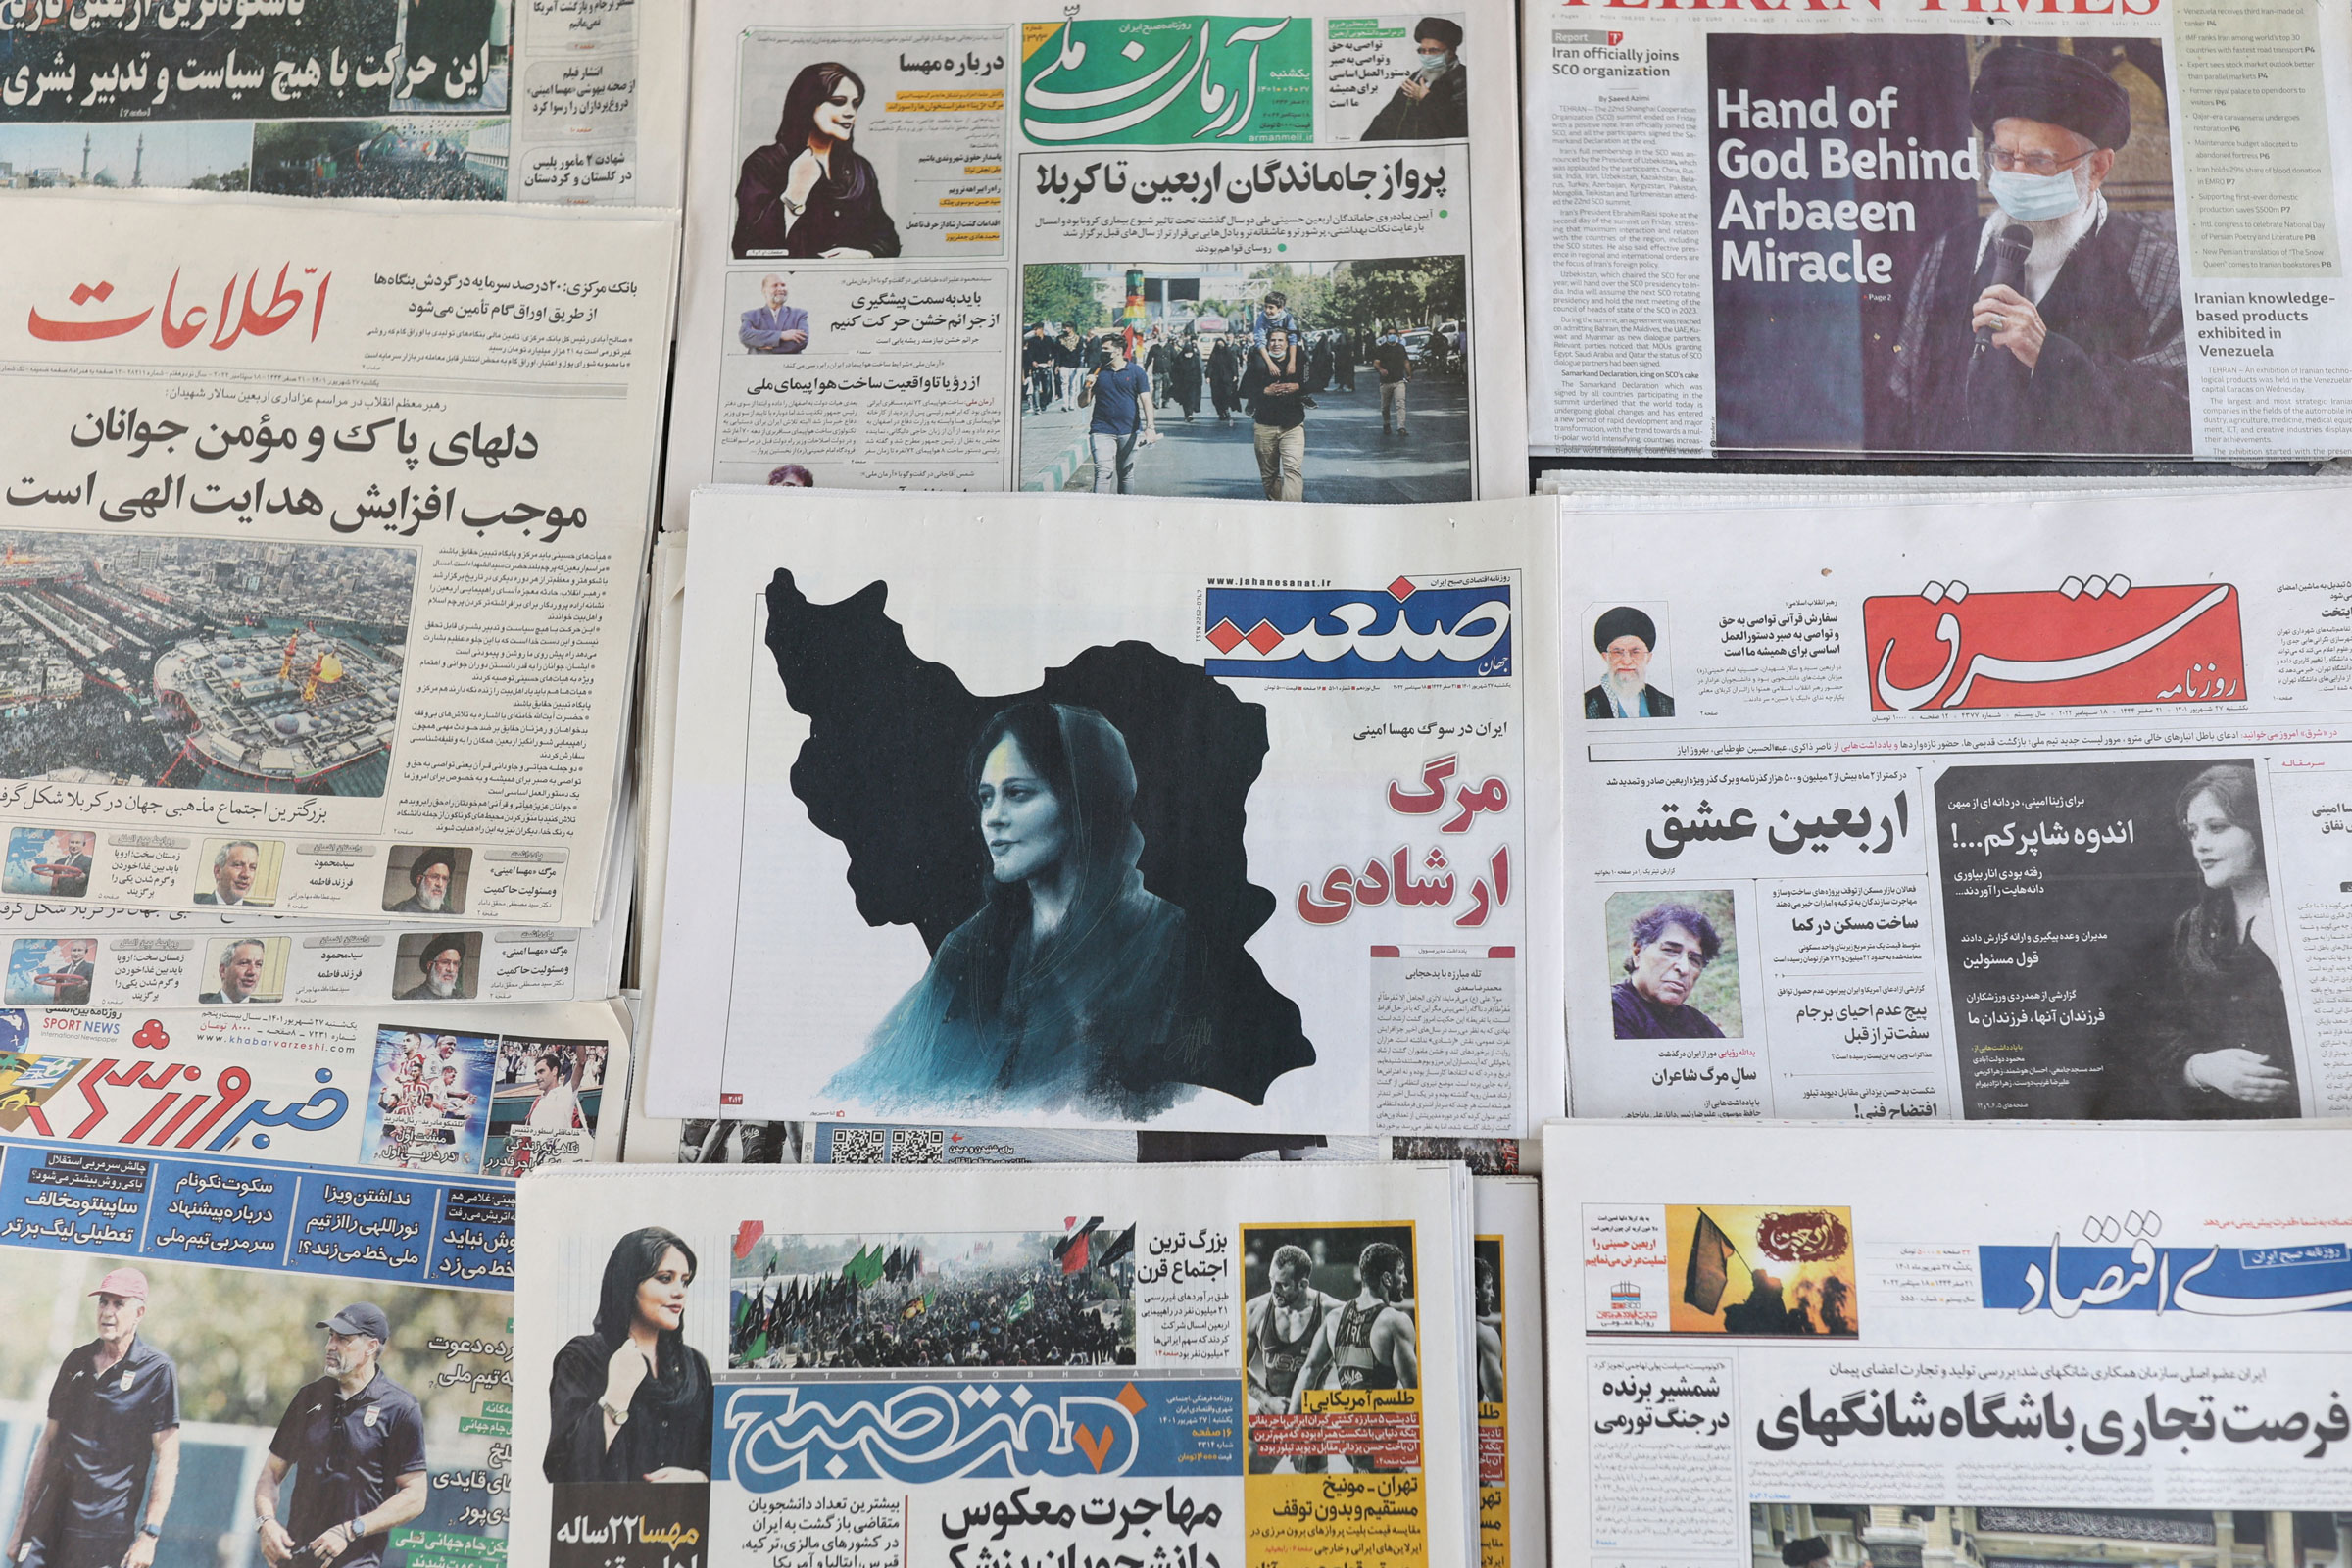 Fotoğraflar, Mahsa Amini'nin İran'daki Ölümüne Dünyanın Tepkilerini Gösteriyor